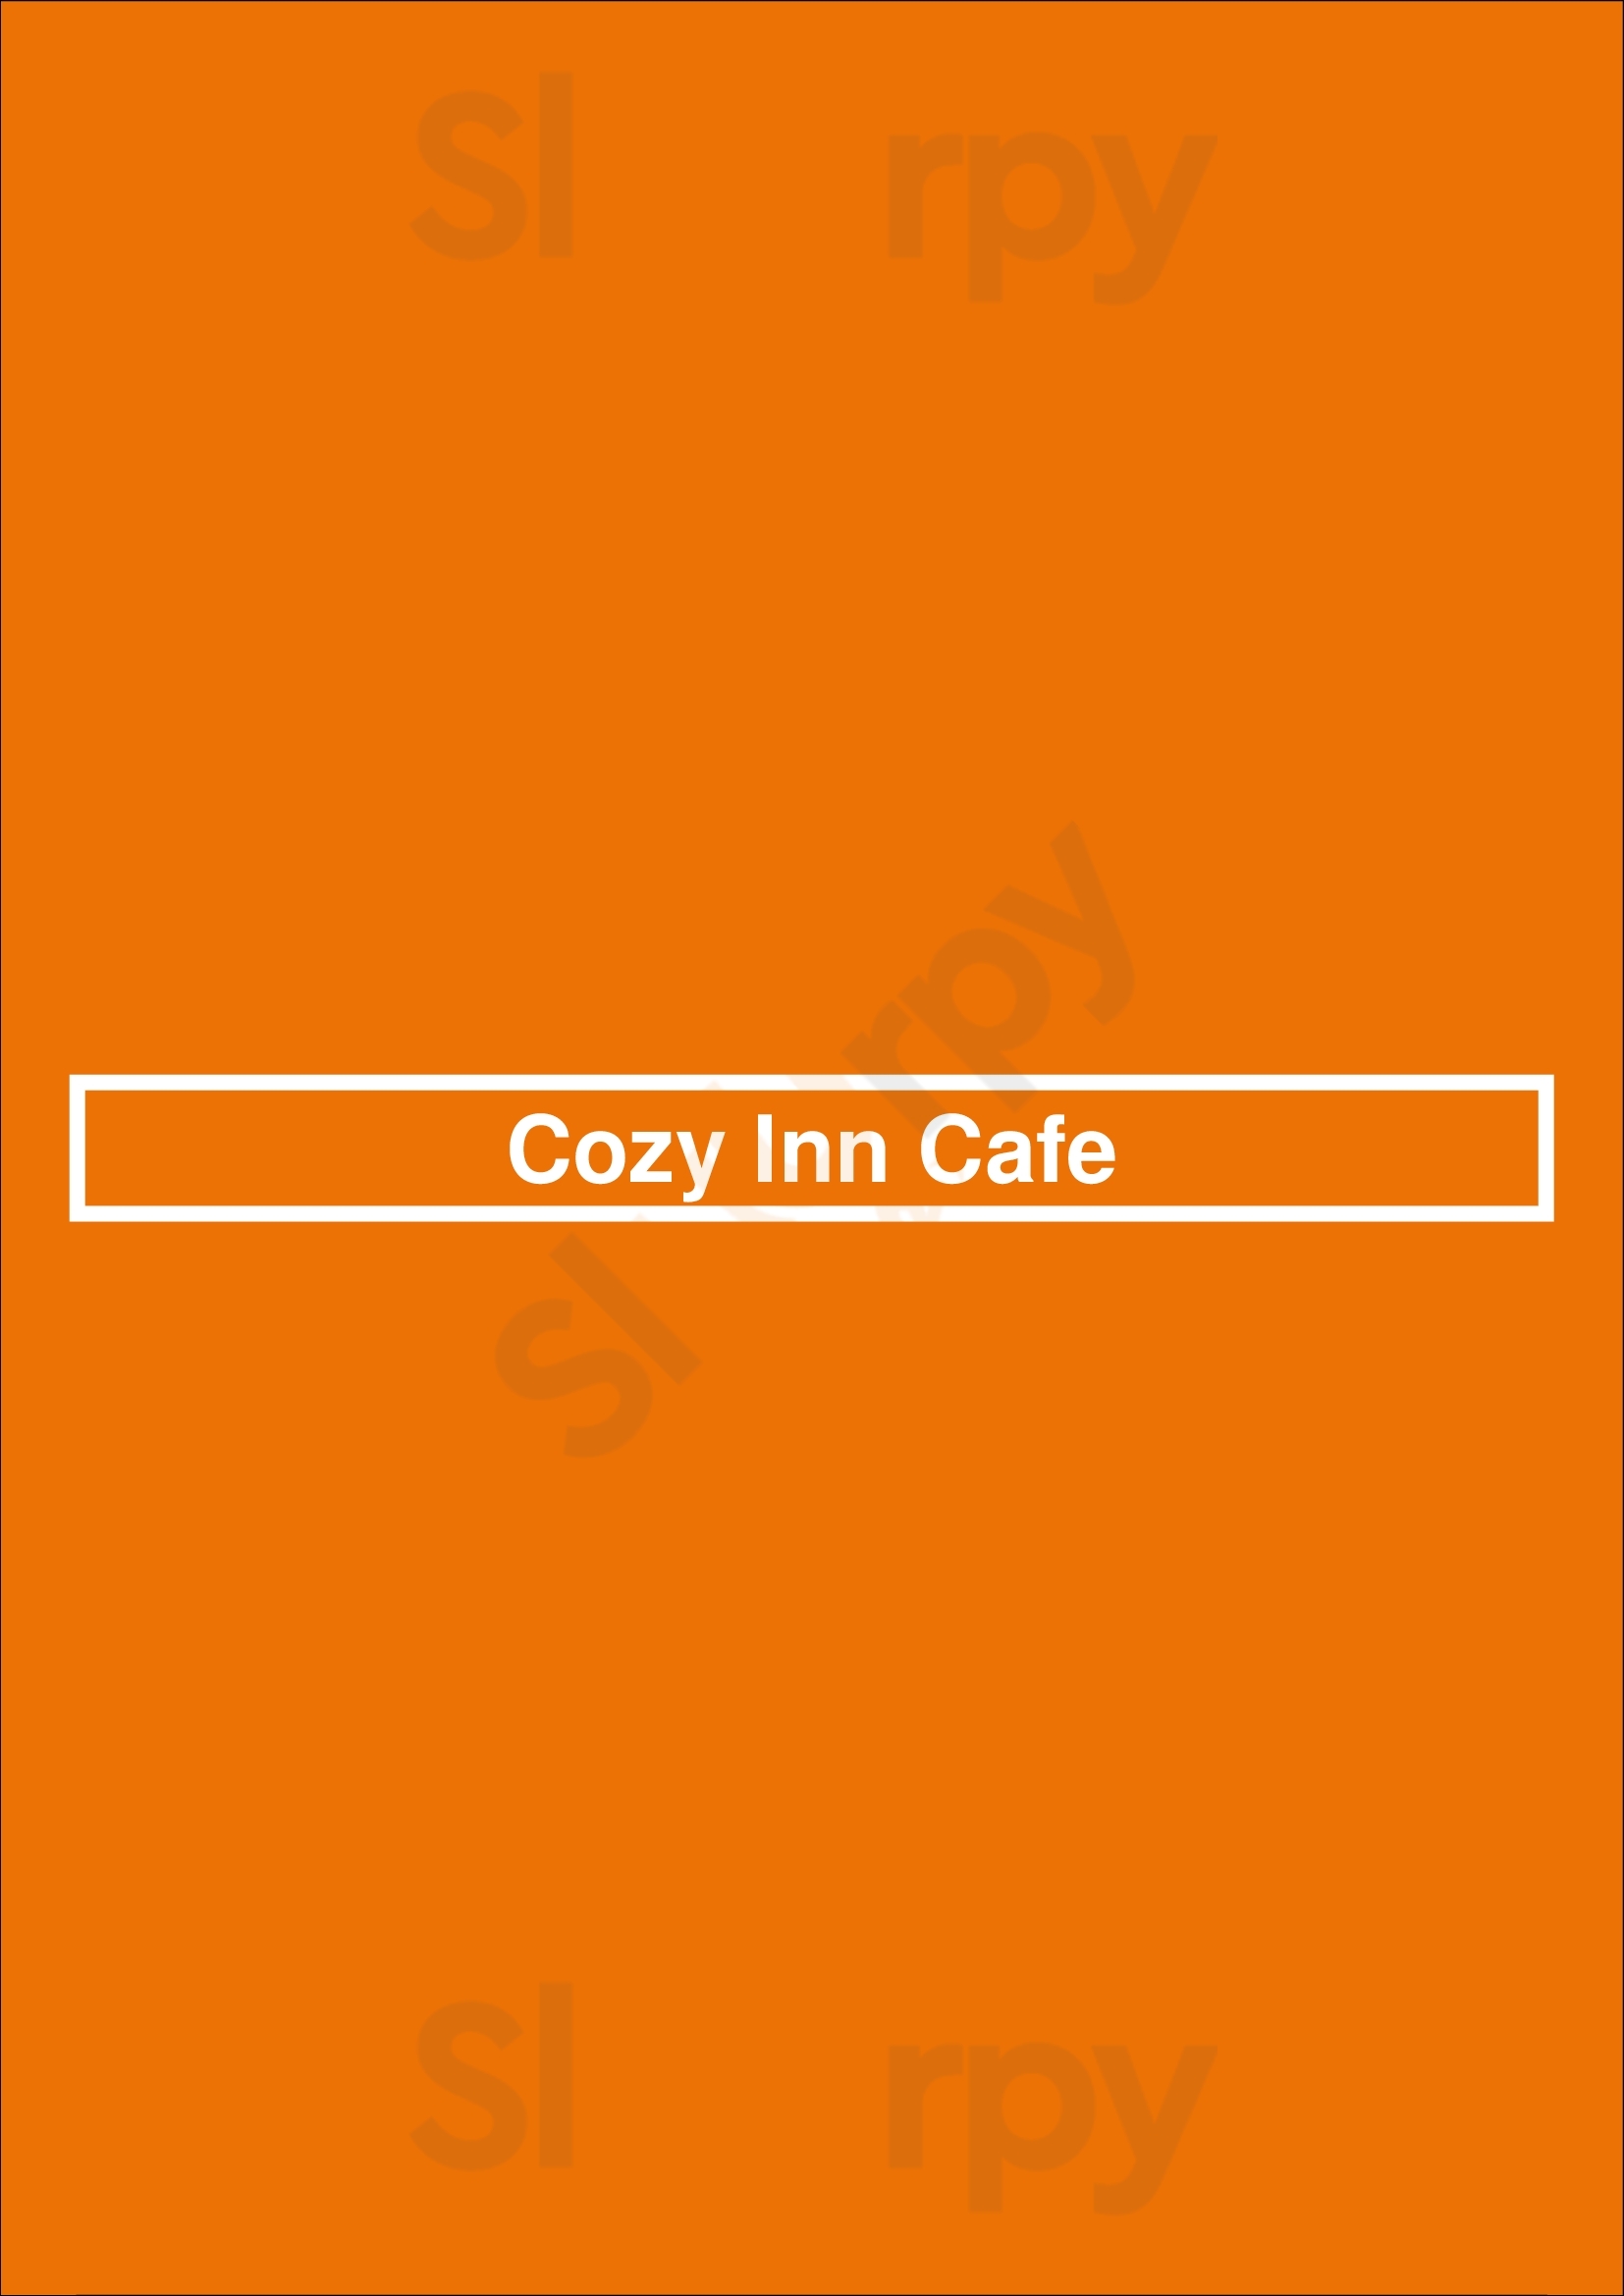 Cozy Inn Cafe Vancouver Menu - 1